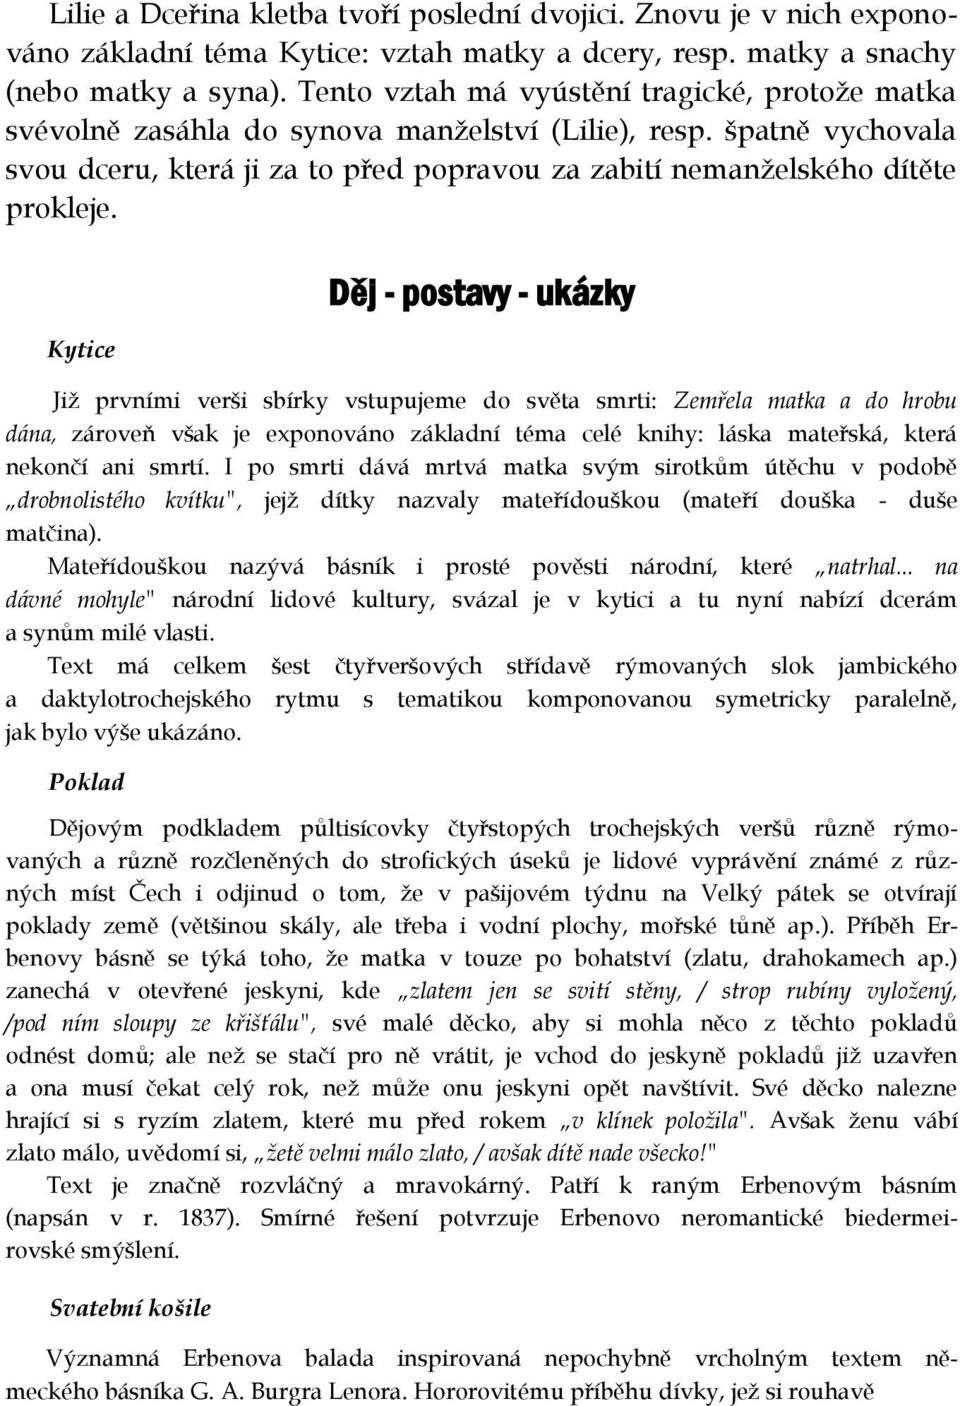 KYTICE Z POVĚSTÍ NÁRODNÍCH - PDF Free Download